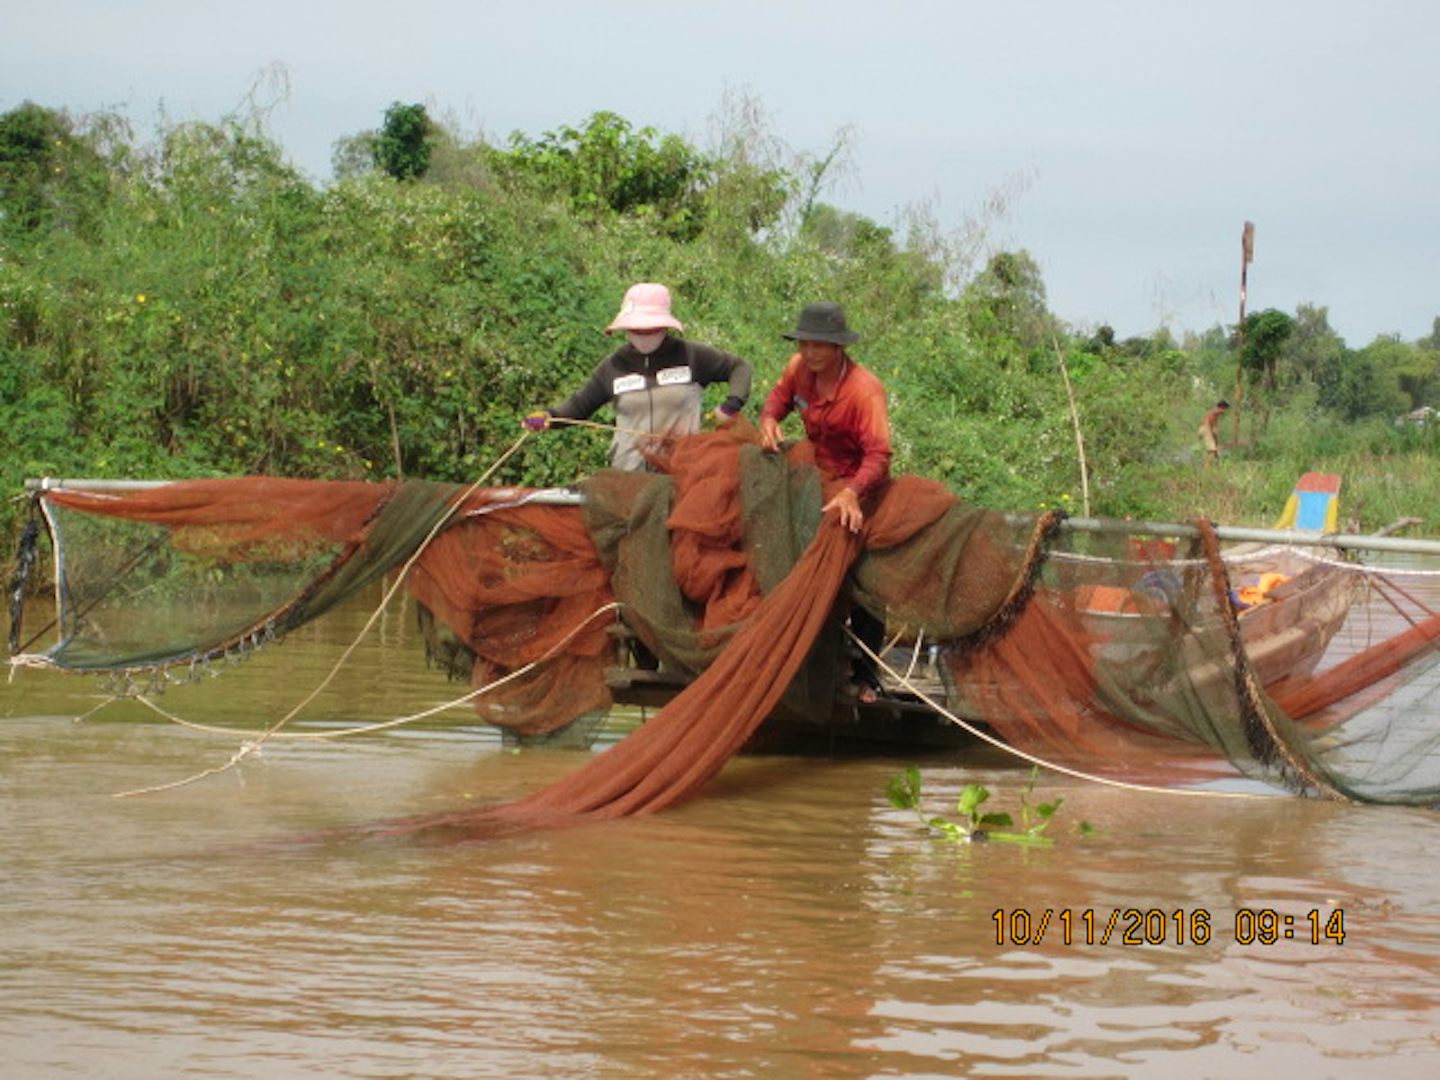 Fishing on the Mekong River.